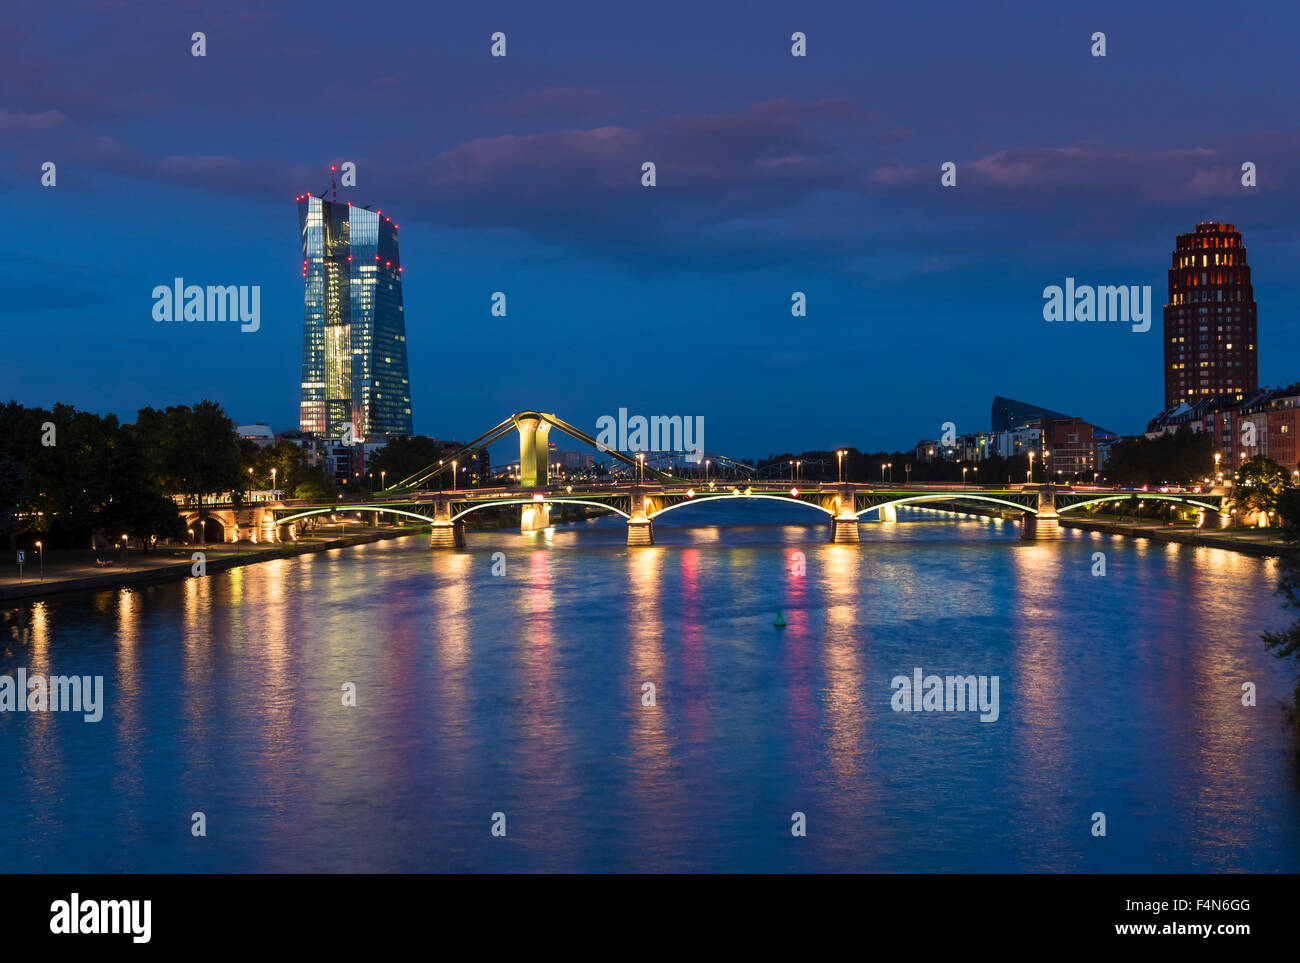 Germania, Francoforte, fiume Main con la Banca centrale europea, Torre della BCE di sera Foto Stock